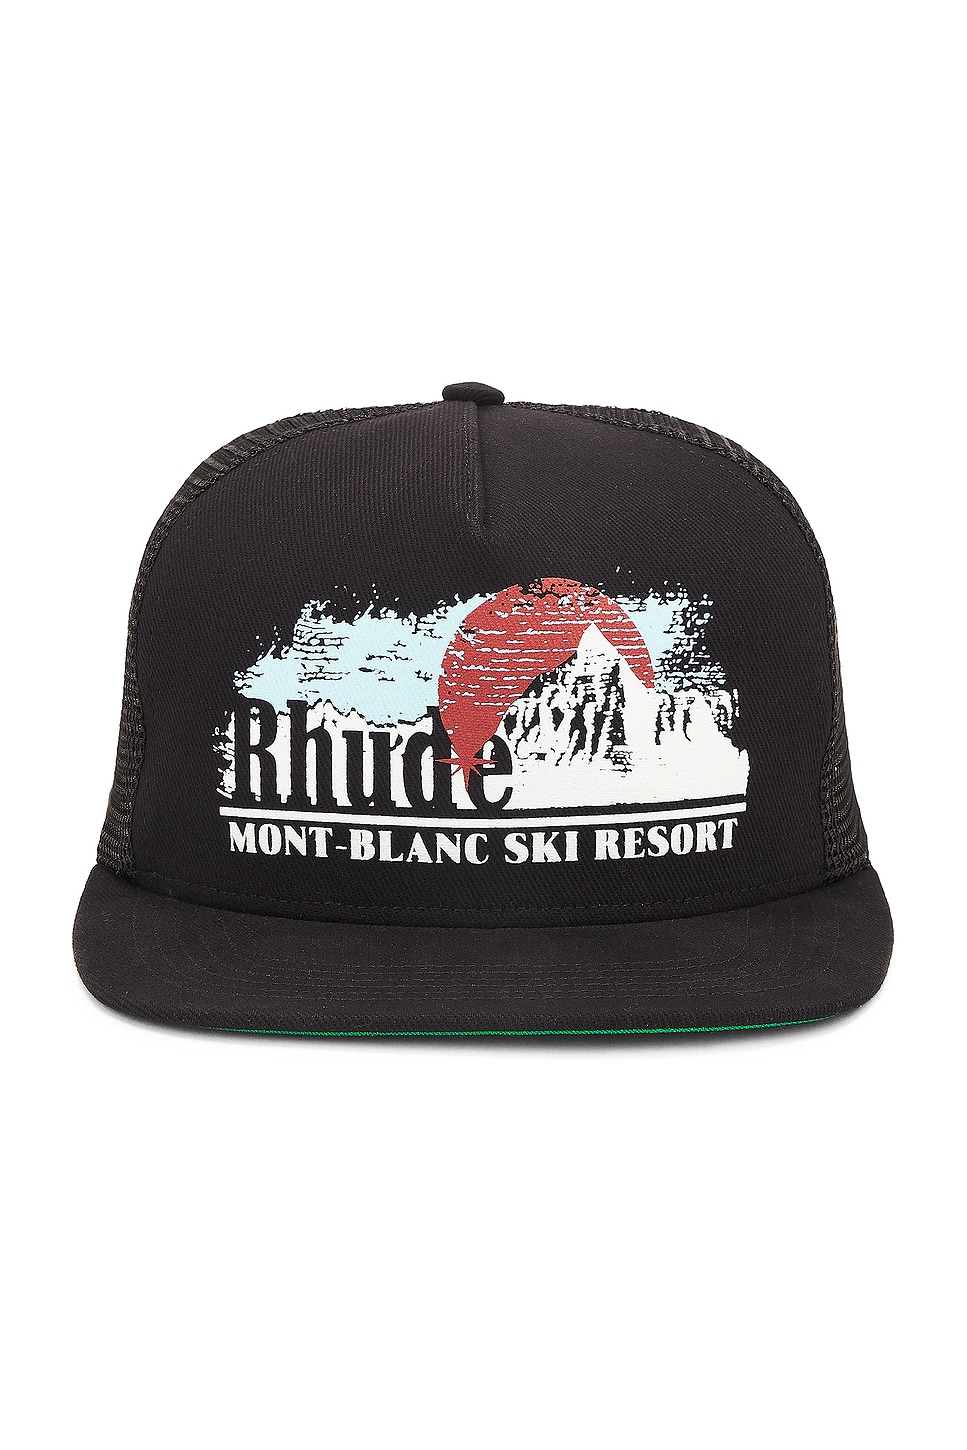 Mont-blanc Trucker Hat in Black